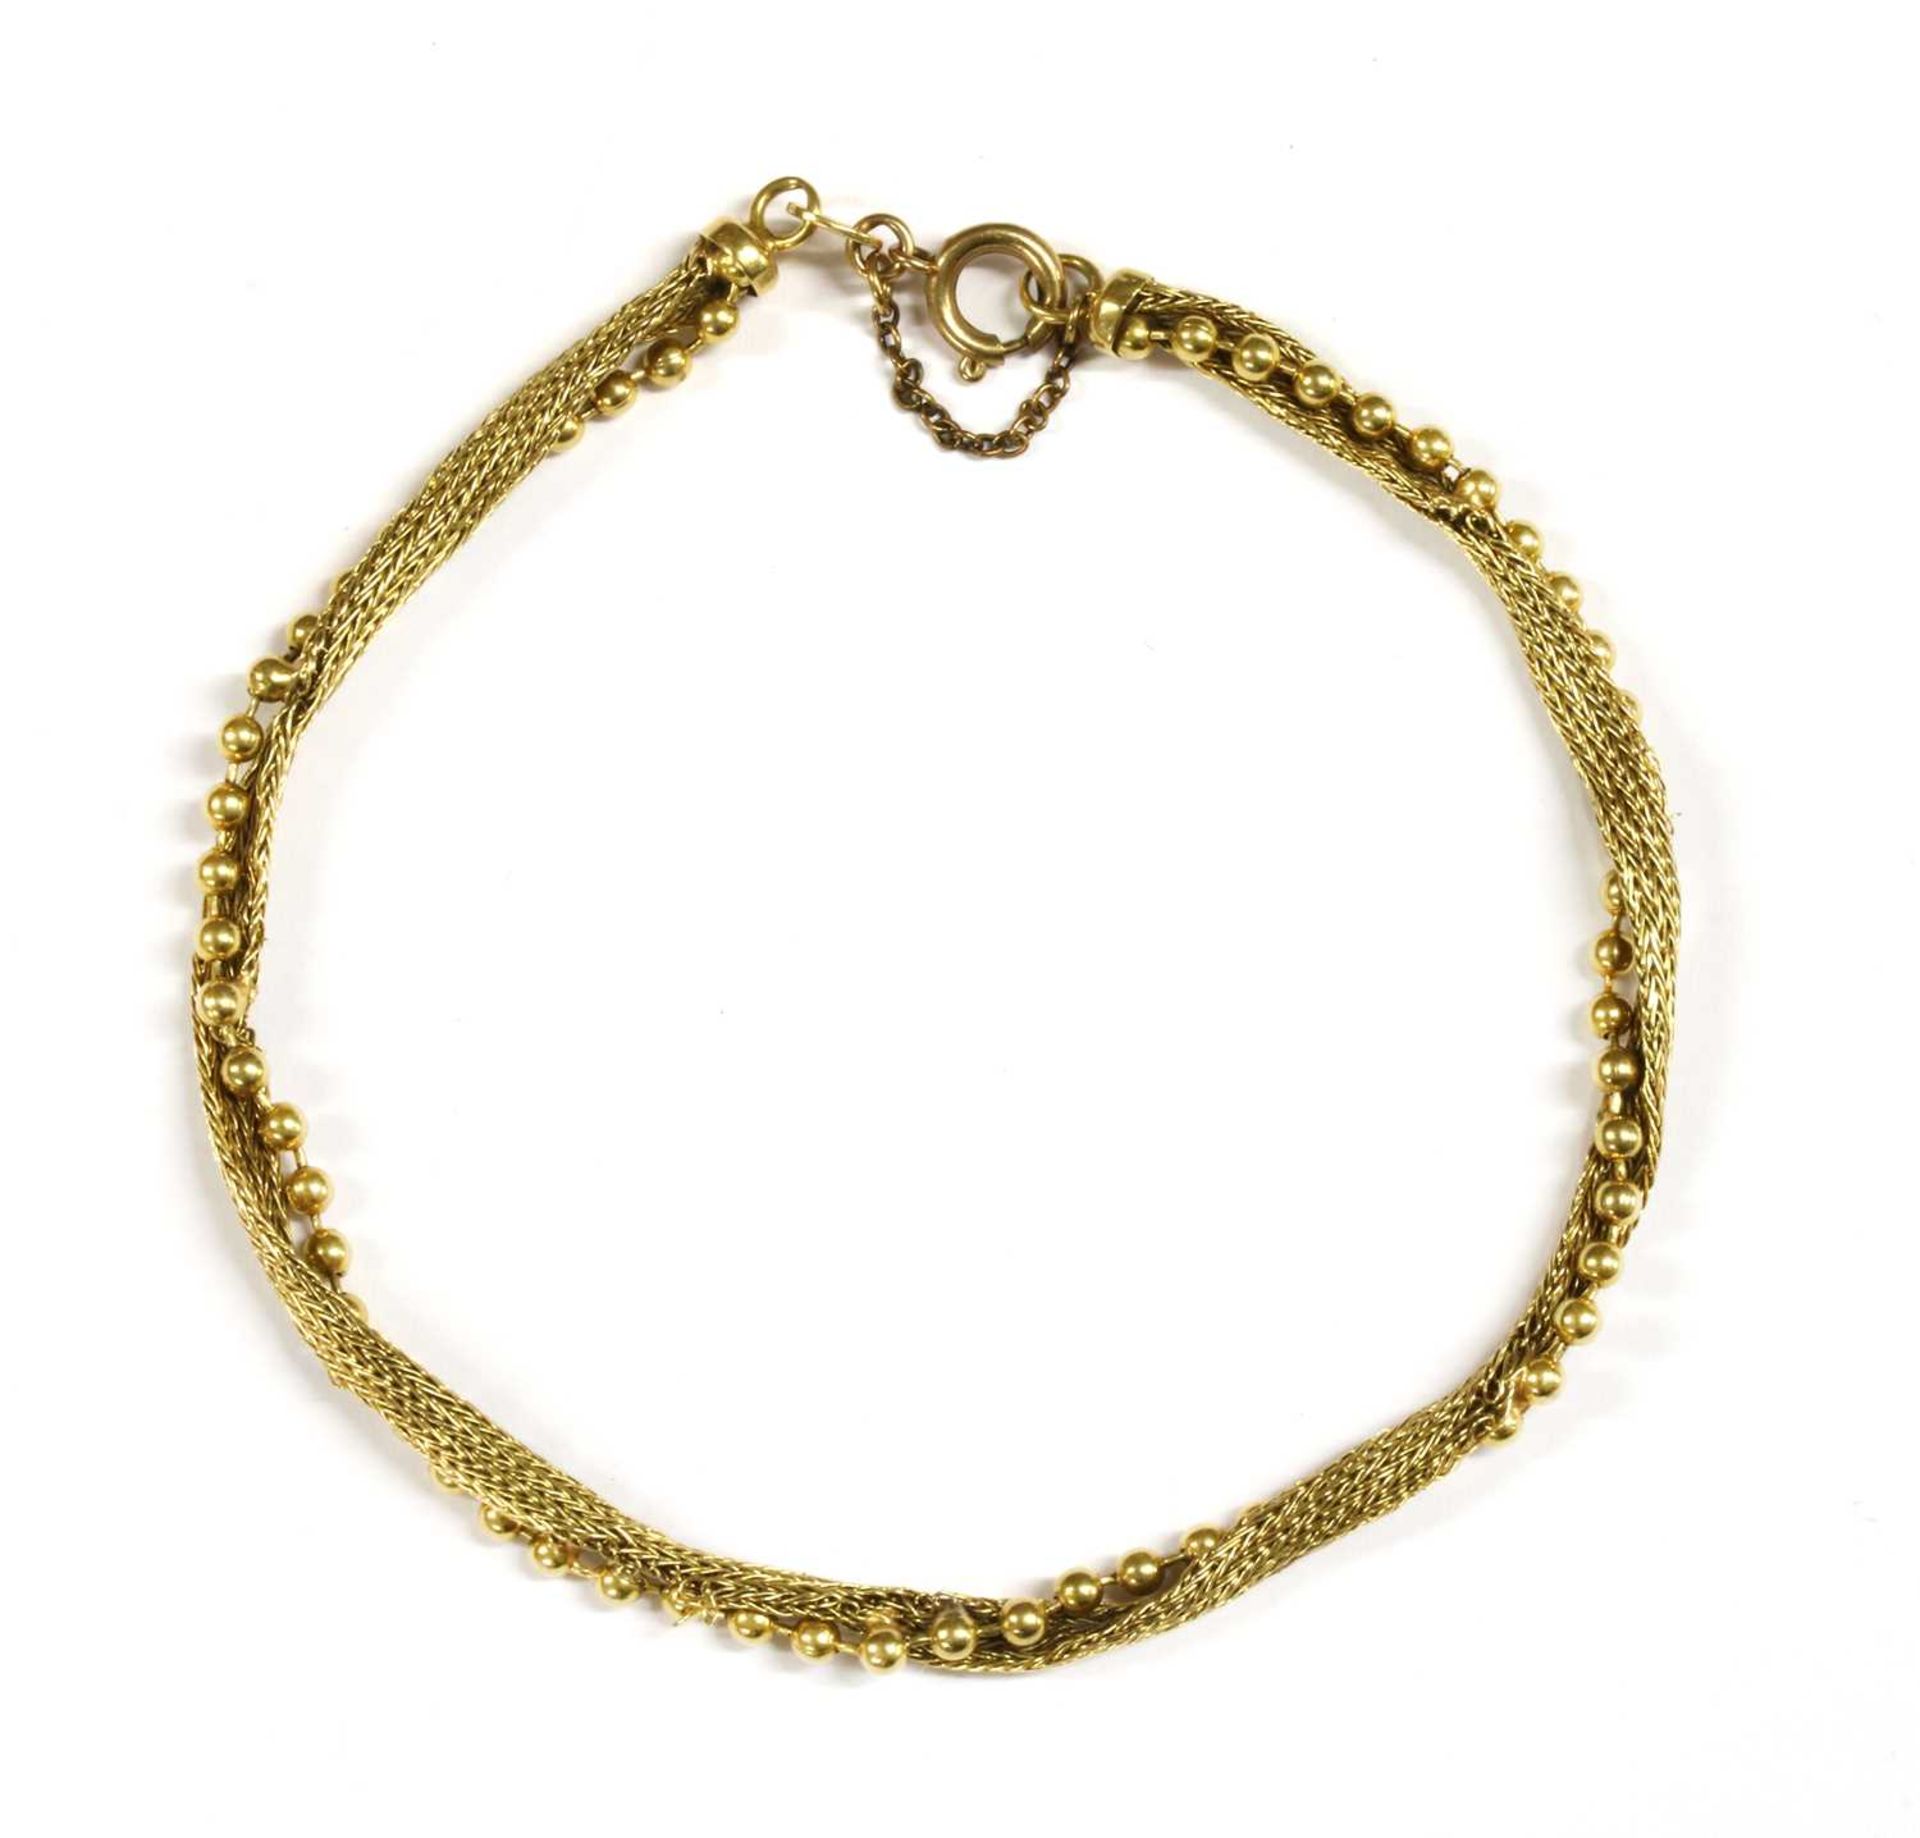 An Italian gold bracelet,